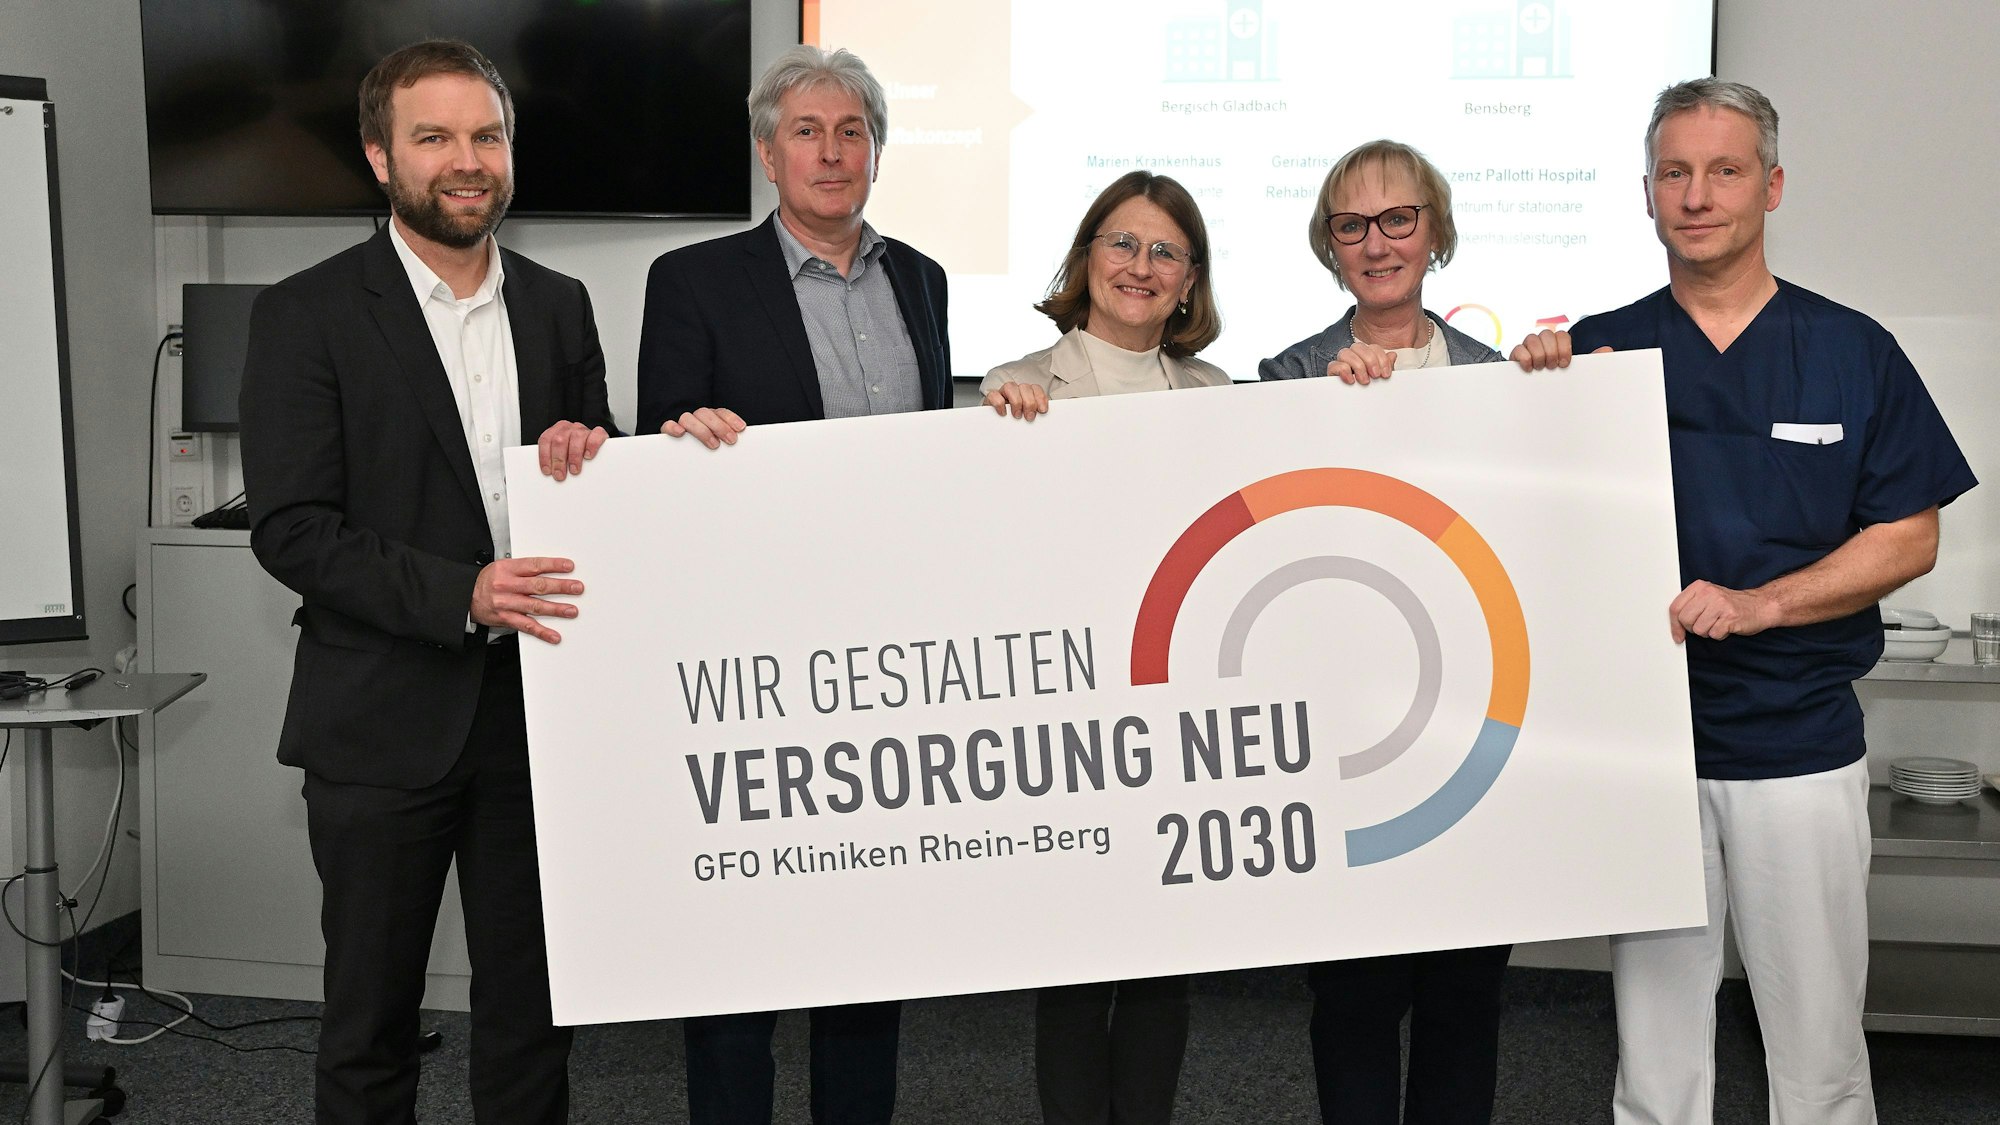 Stephan Muhl, Dr. Jörg Kösters, Dr. Barbara Florange, Monika Gerfer und Dr. Stefan Machtens halten ein Schild, auf dem steht: „Wir gestalten Versorgung neu. GFIO Kliniken Rhein-Berg 2030“.